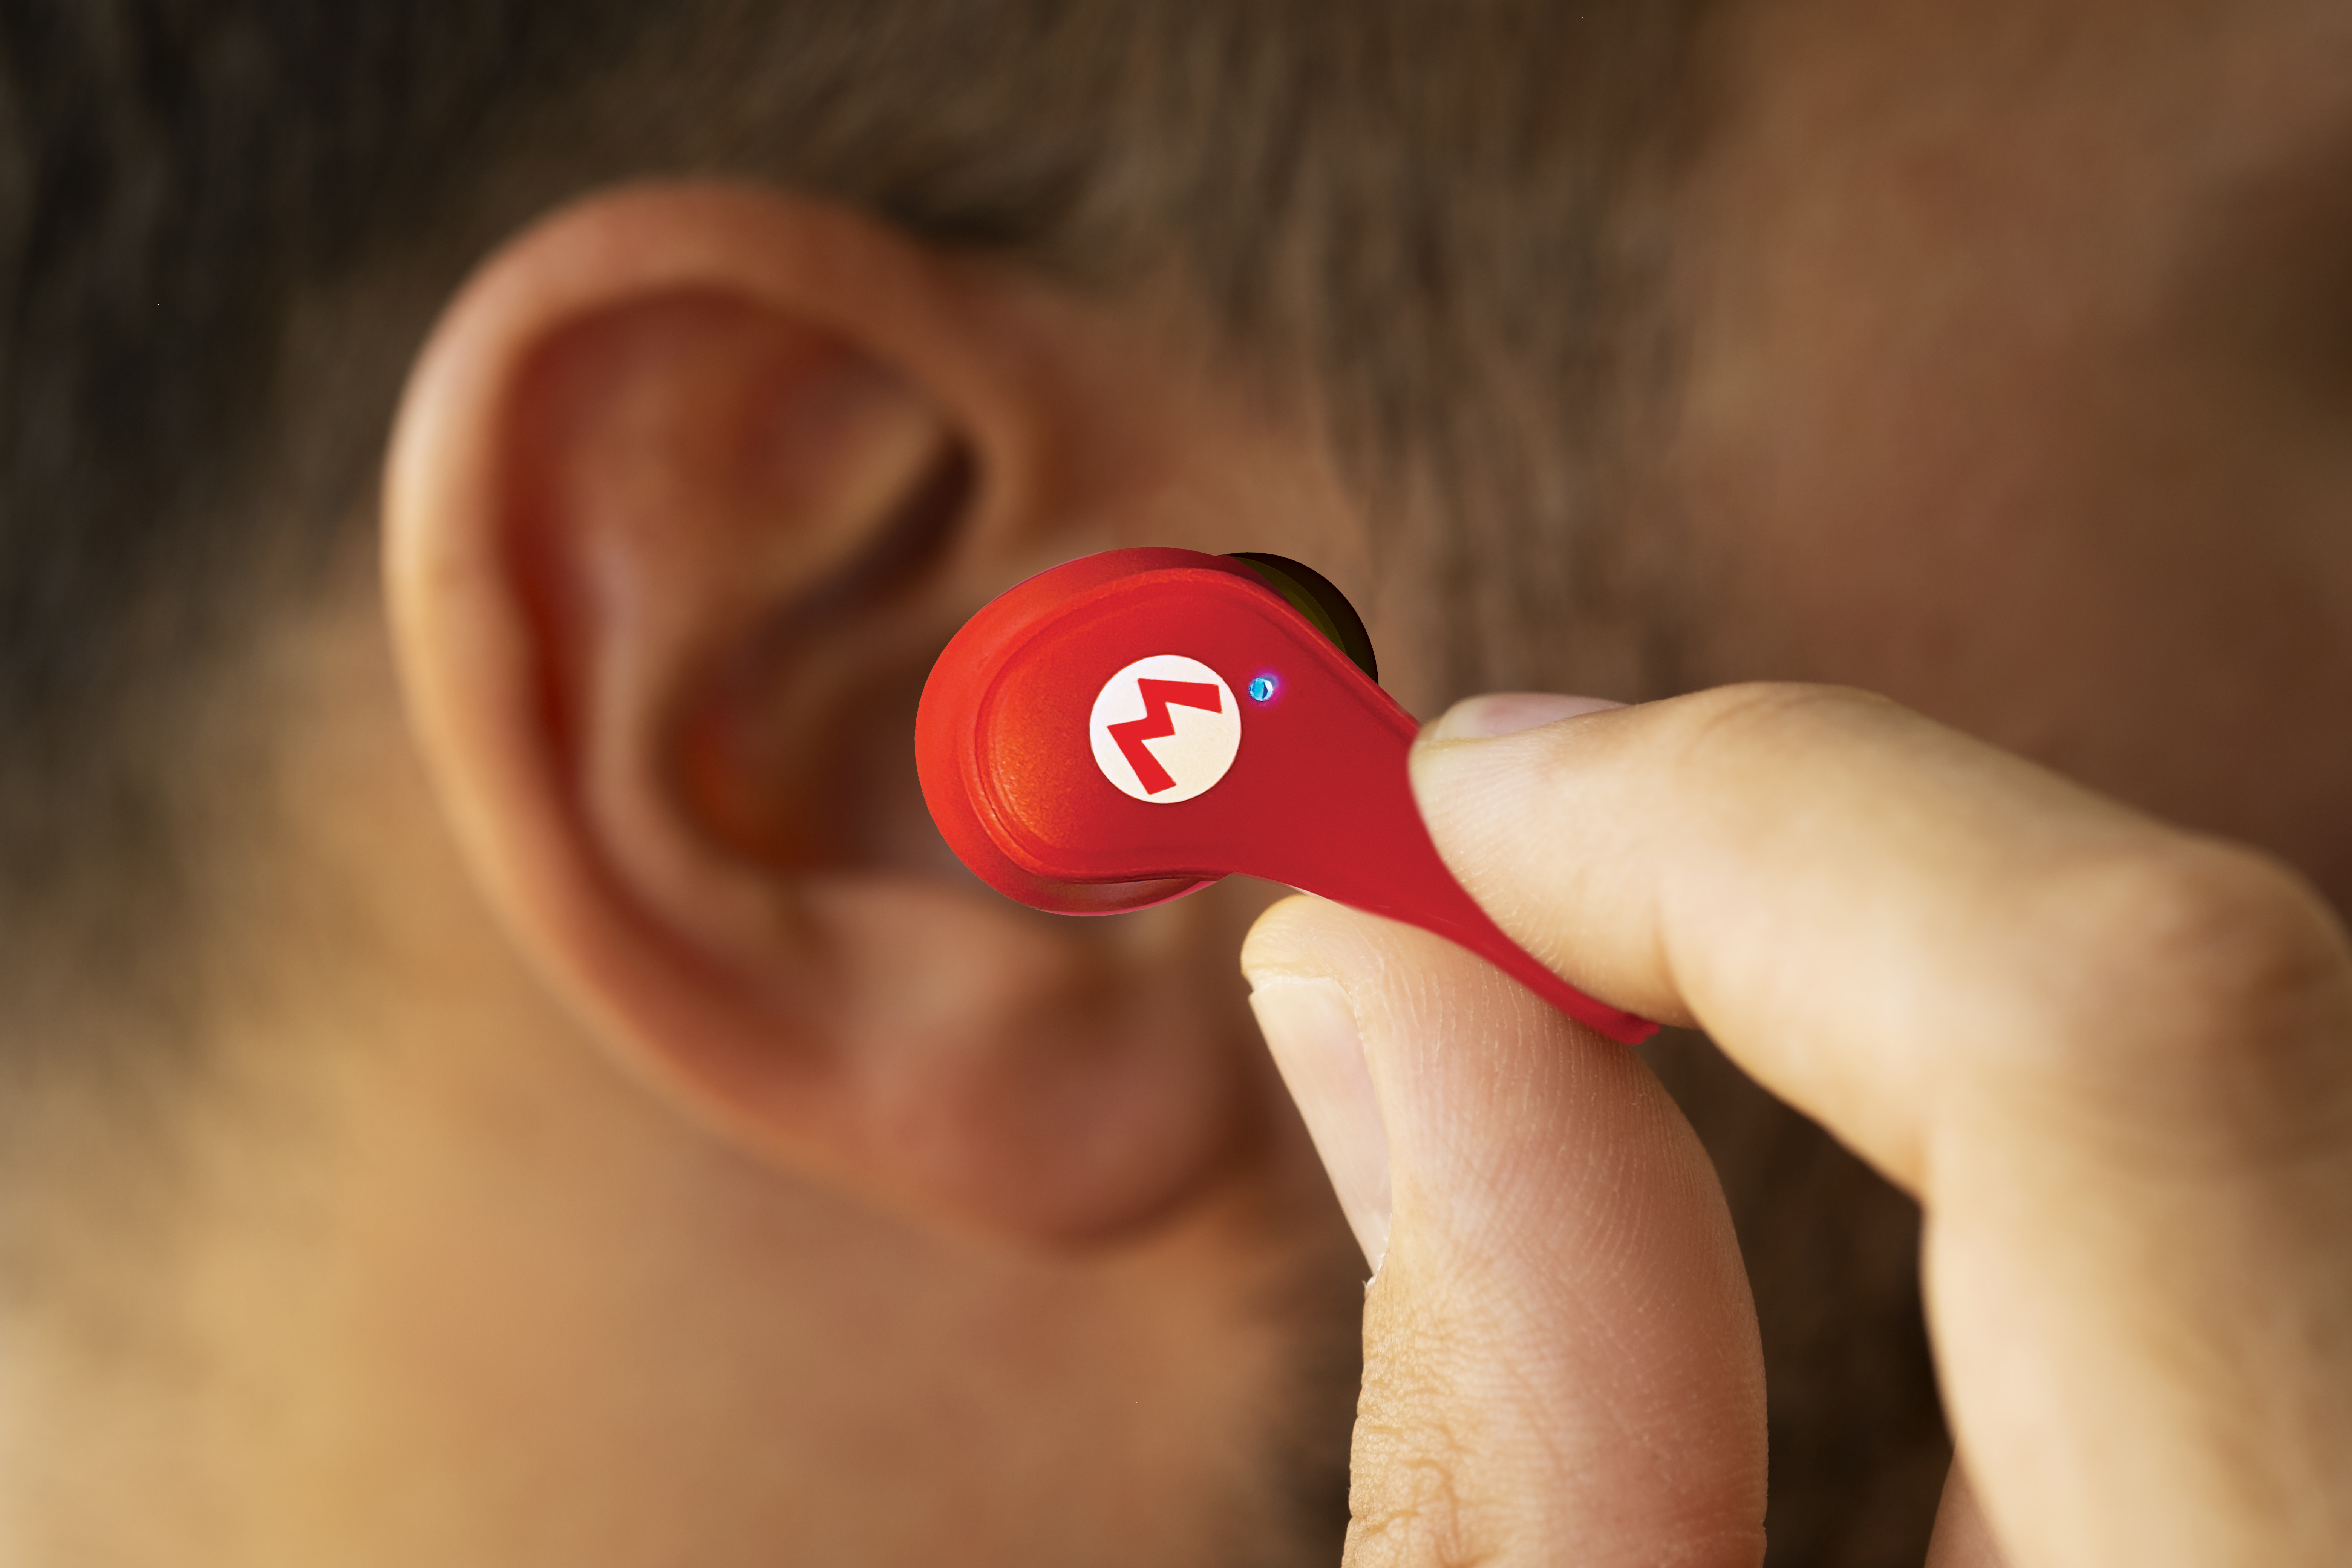 OTL TECHNOLOGIES Super Mario, In-ear rot Kopfhörer Bluetooth